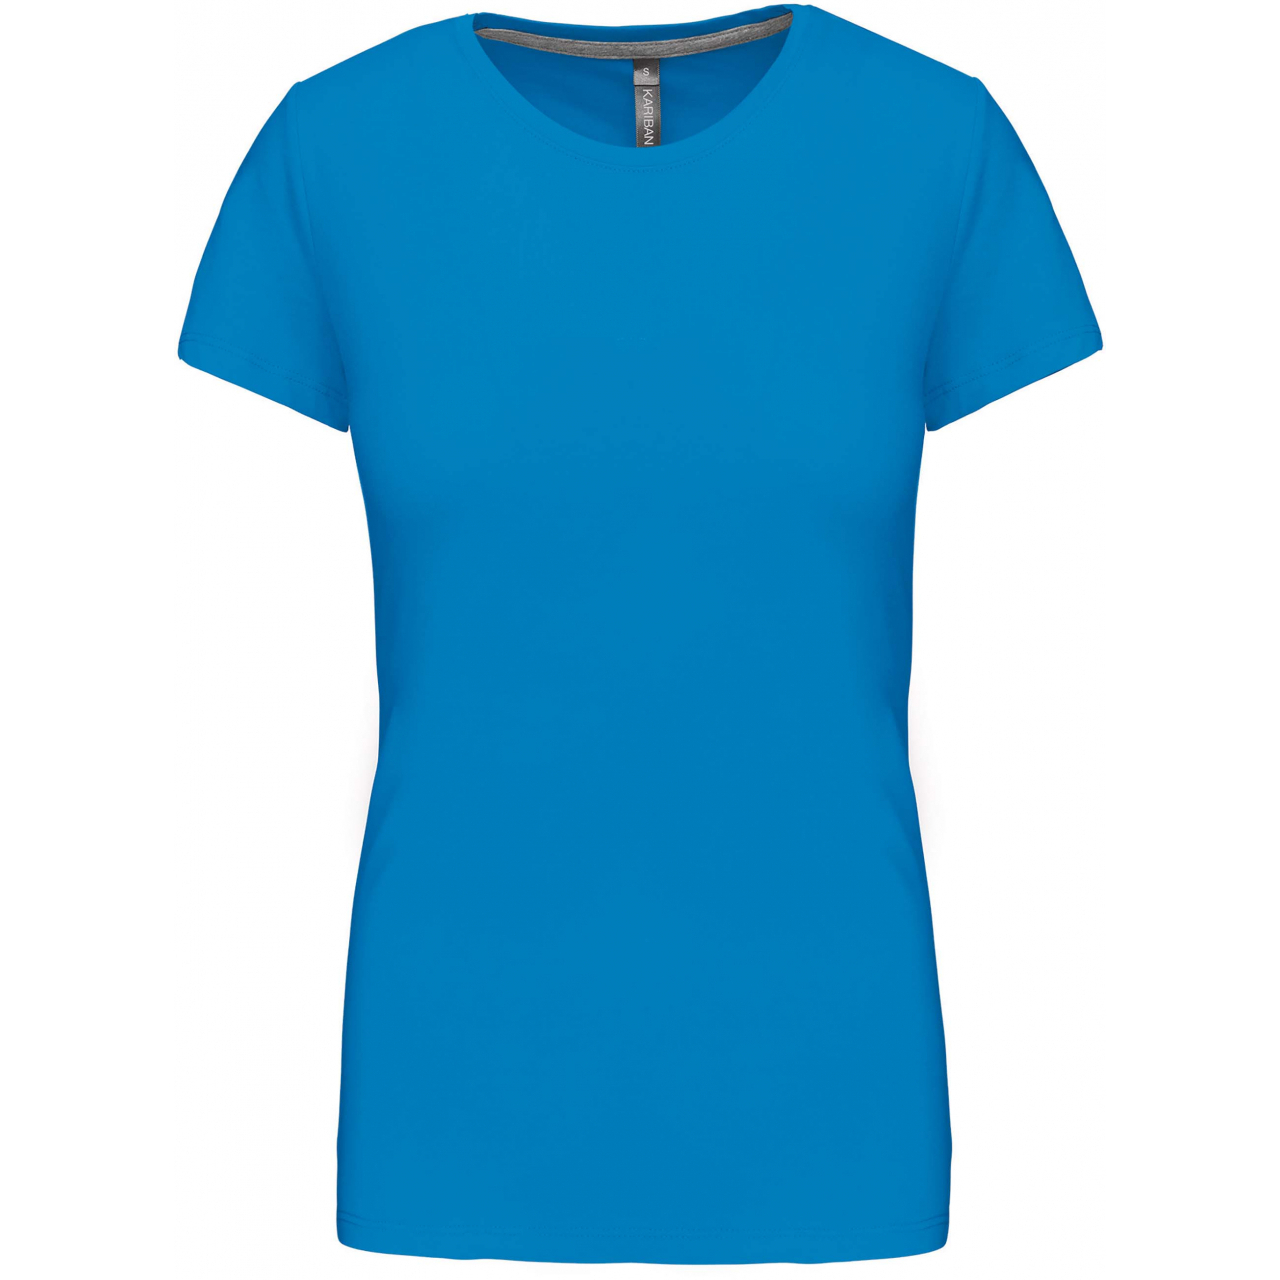 Dámské tričko Kariban s krátkým rukávem - středně modré, L